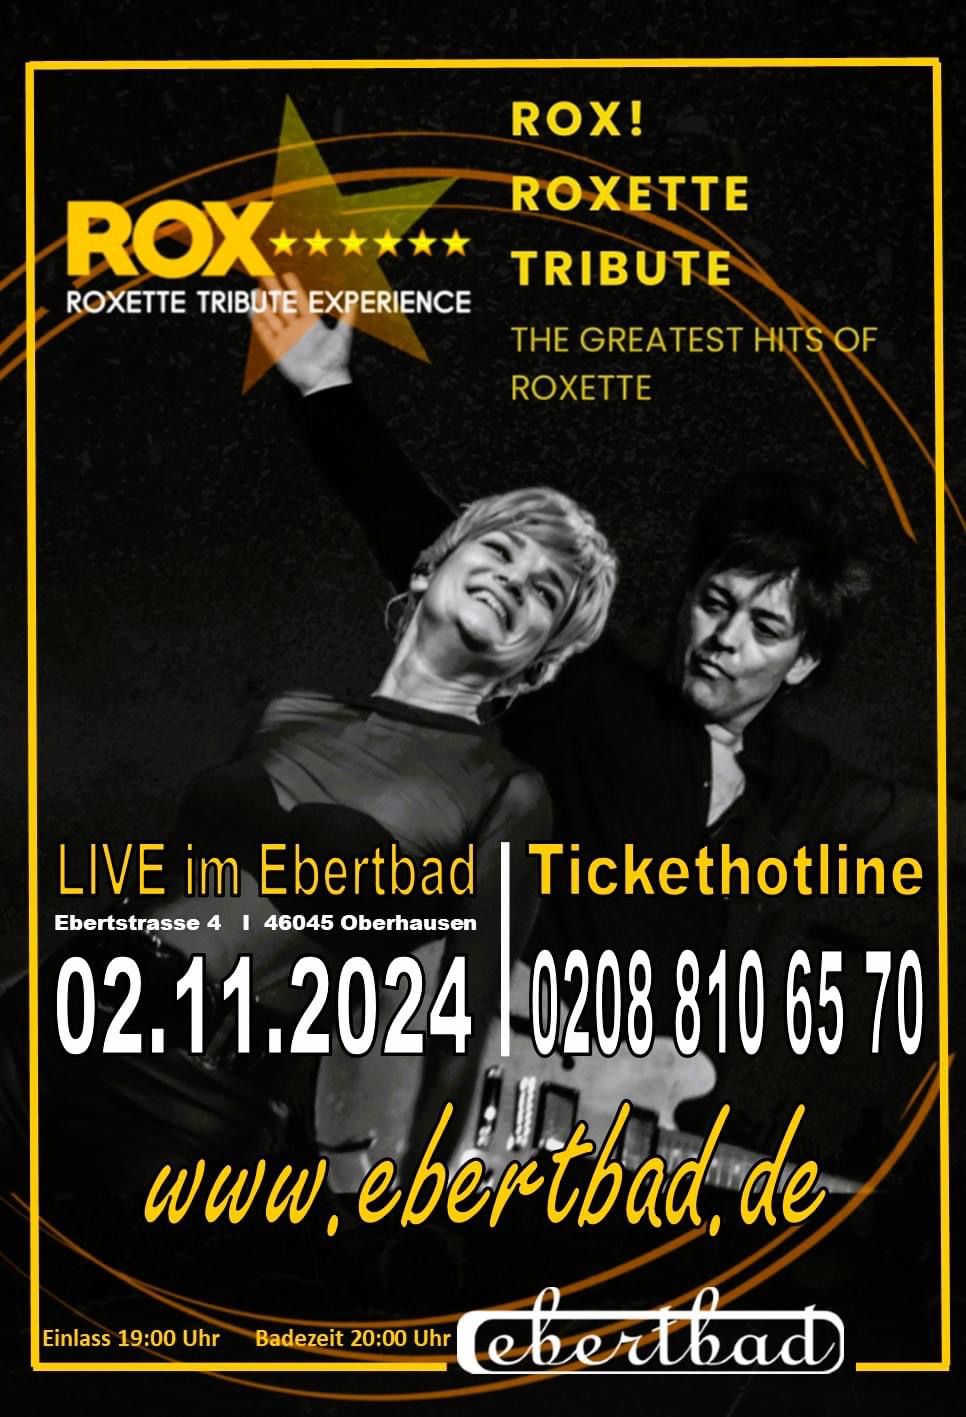 ROX Roxette Tribute - OldieRock